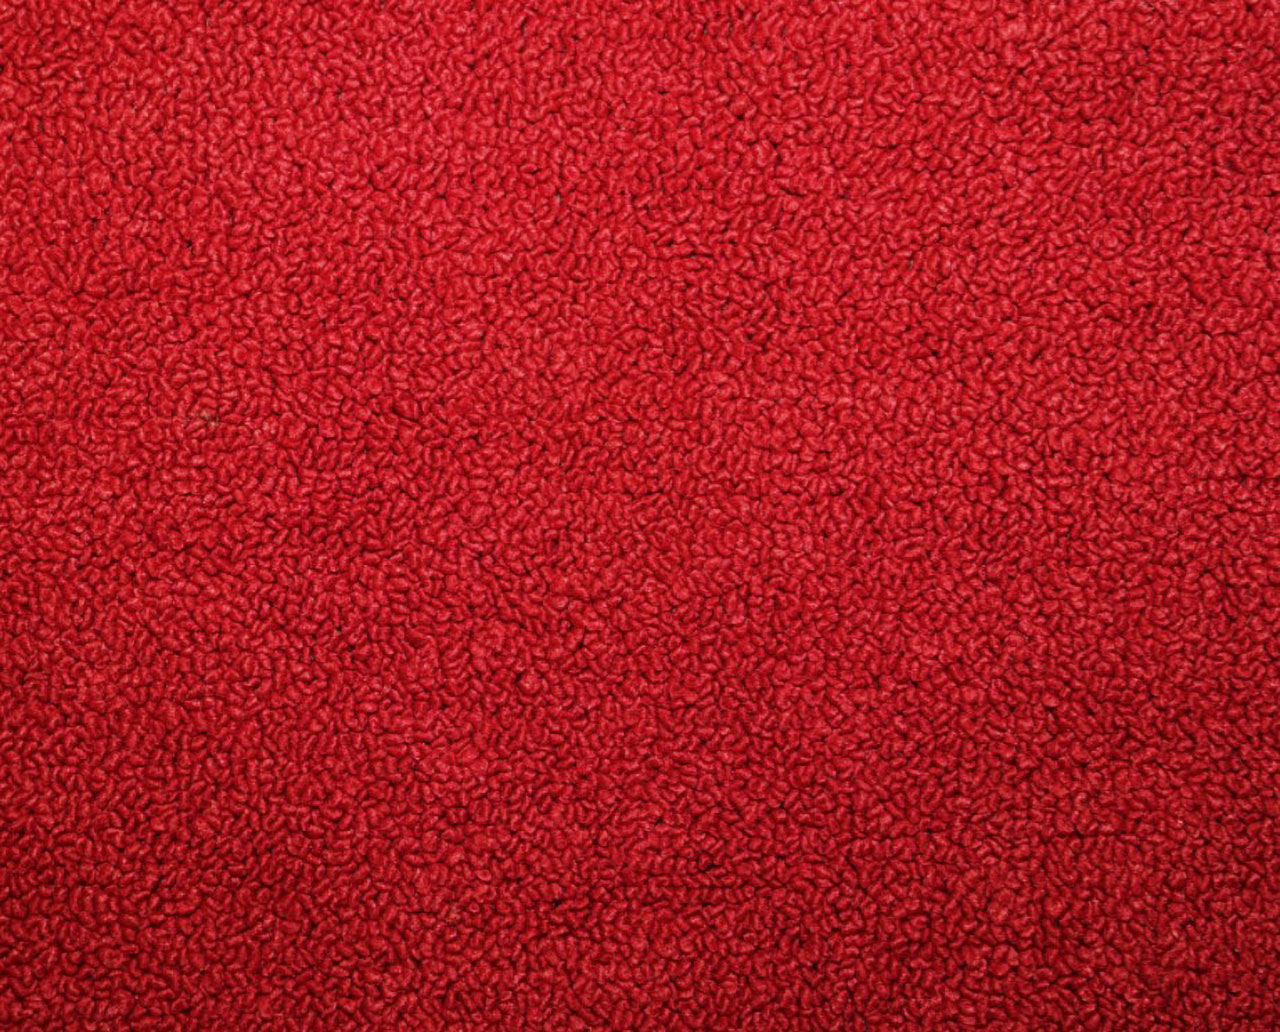 Holden Standard HR Standard Panel Van E73 Mephisto Red Carpet (Image 1 of 1)